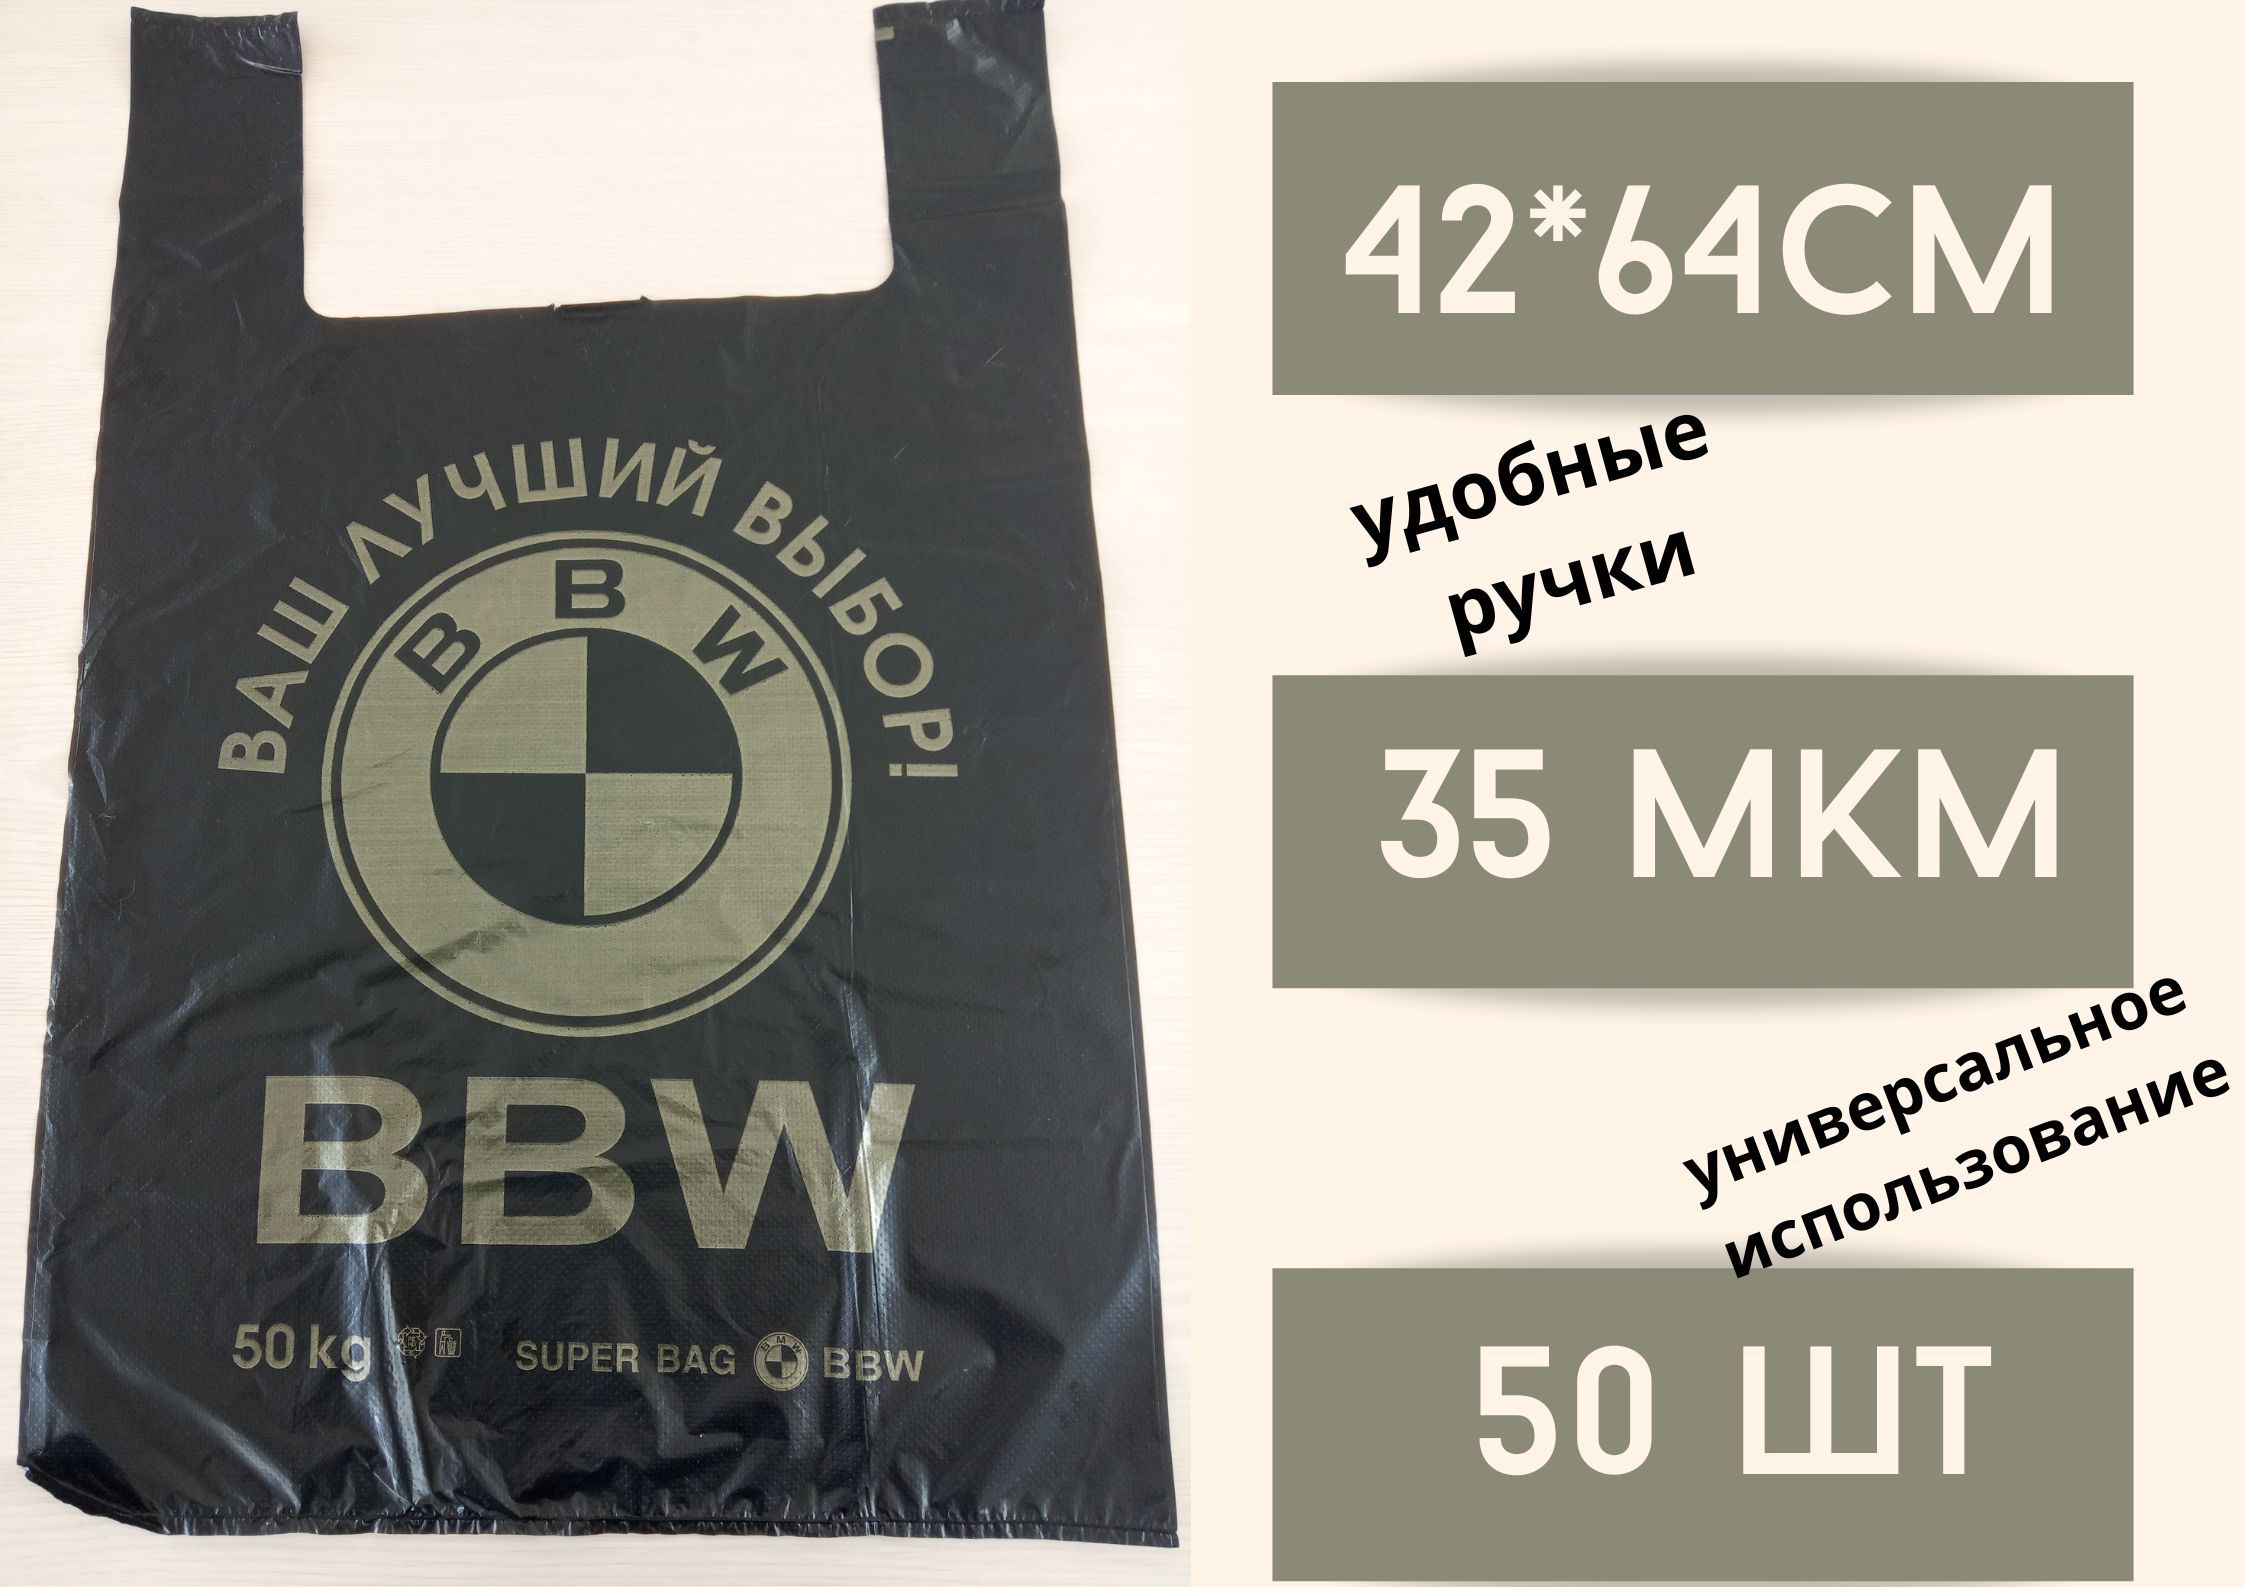 Пакет майка БытСервис фасовочный полиэтиленовый, черный,BBW 50 штбольшой, 42*64 см